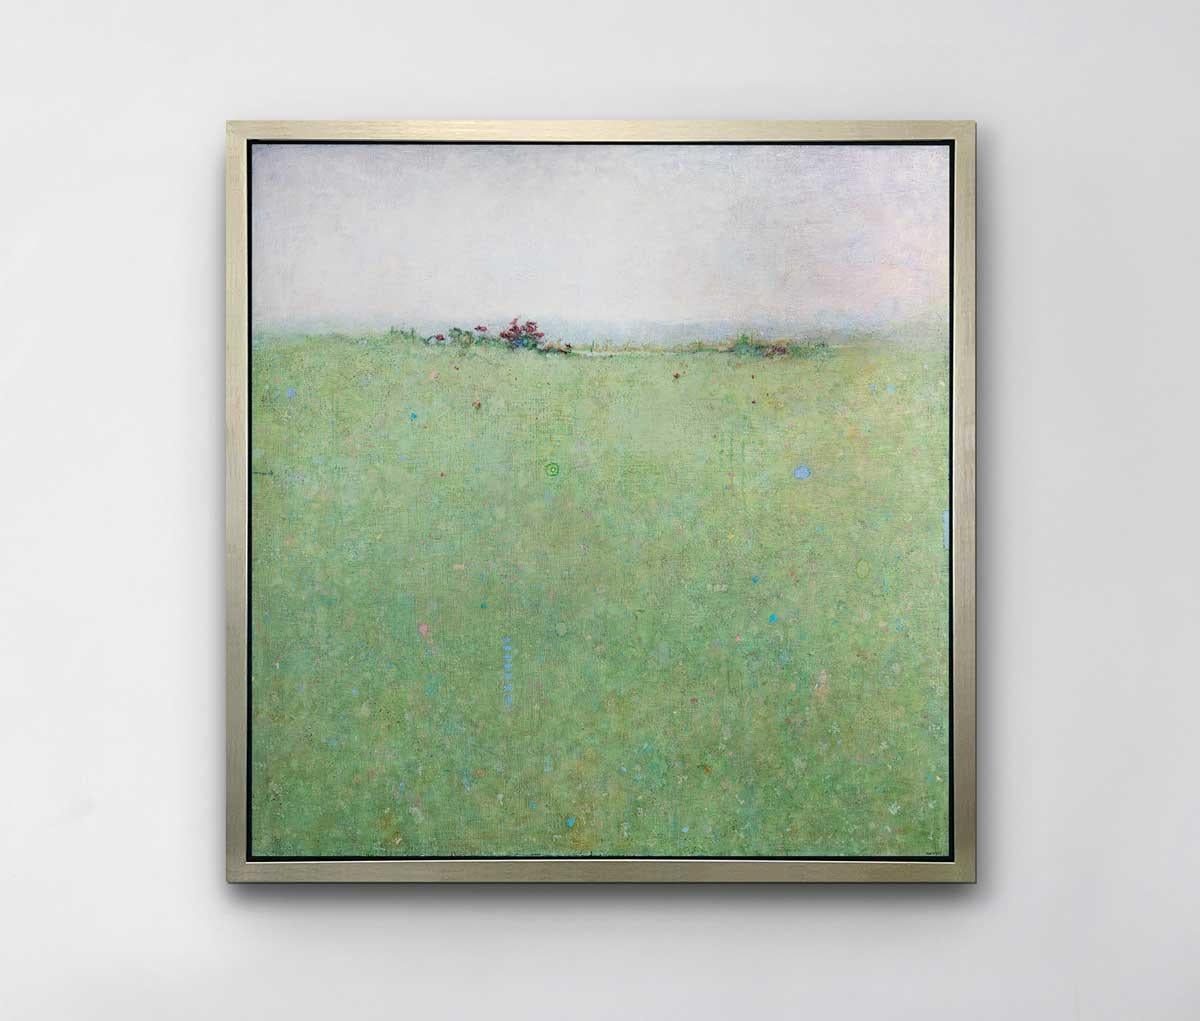 Cette impression à tirage limité est un paysage abstrait d'Elwood Howell. Il présente une ligne d'horizon haute et floue, avec du vert en dessous et du gris clair au-dessus. La zone verte est parsemée de petites taches de couleur vive comme le bleu